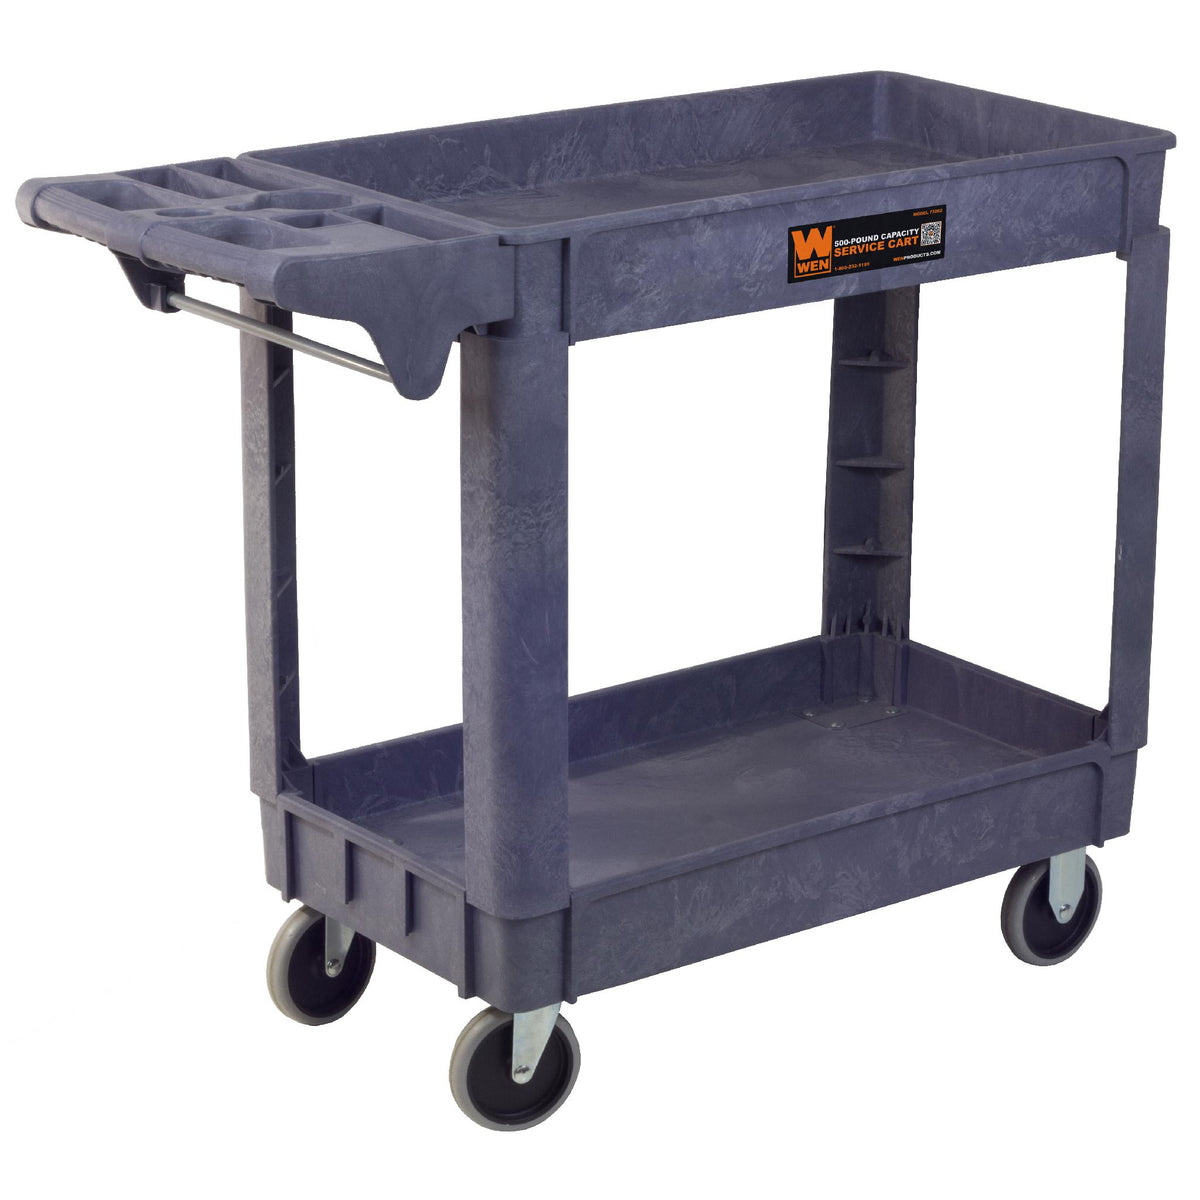 WEN 2 Shelf Polypropylene Service Cart, Gray